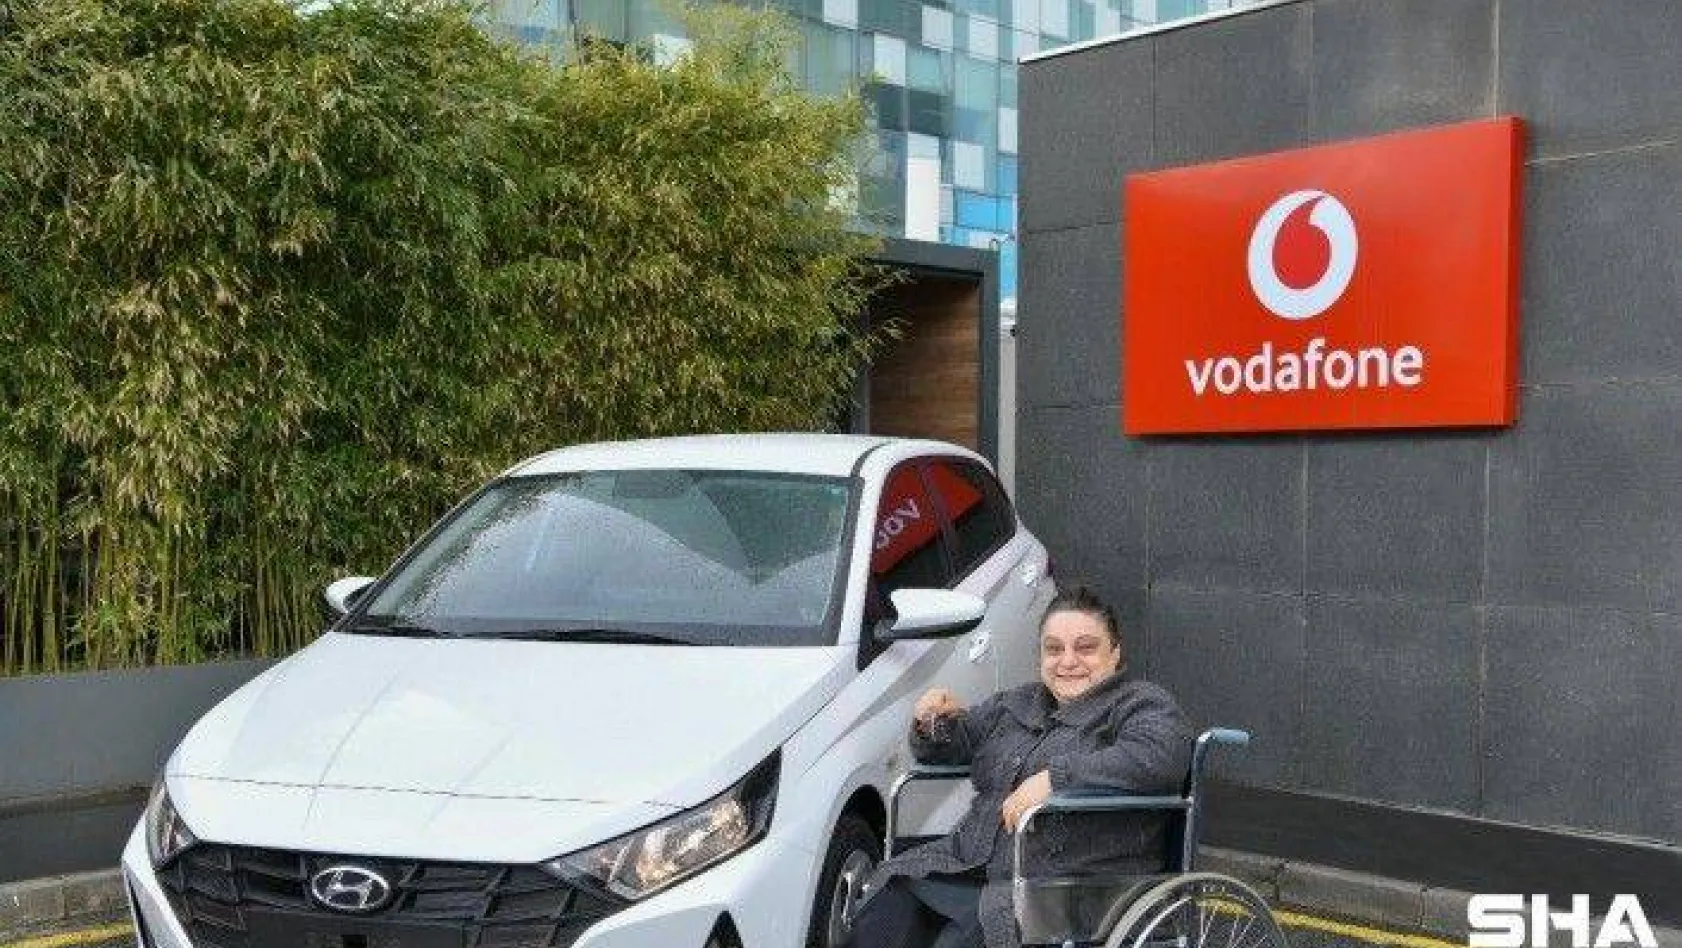 Vodafone online mağaza hediye çekilişi sonuçlandı